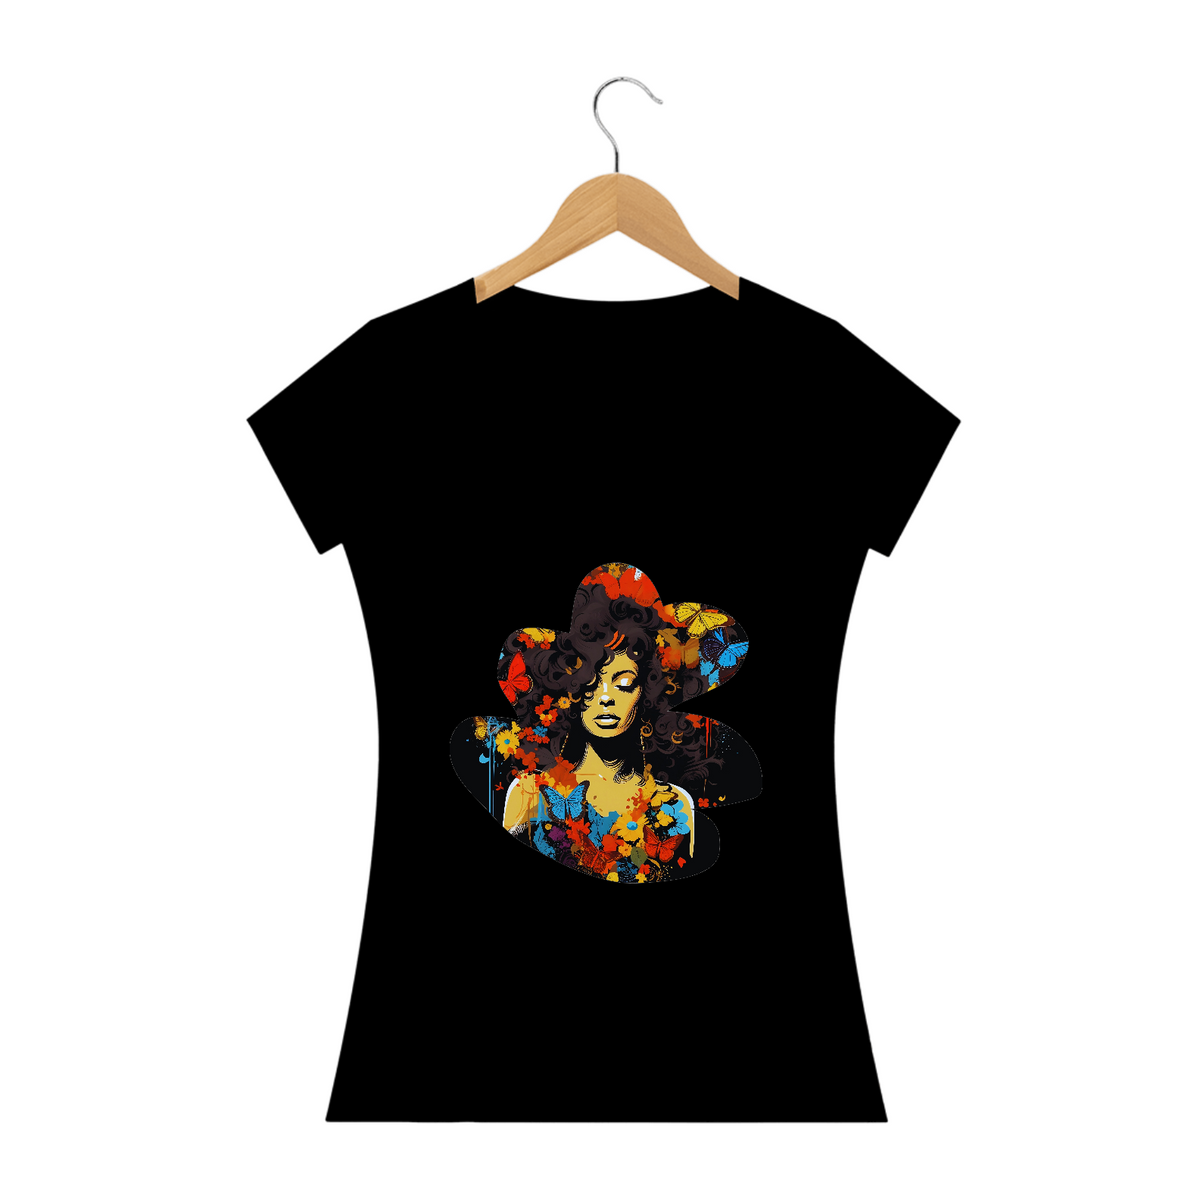 Nome do produto: Camiseta Feminina Mulher Afro com Borboletas: Uma Mistura de Estilos Artísticos